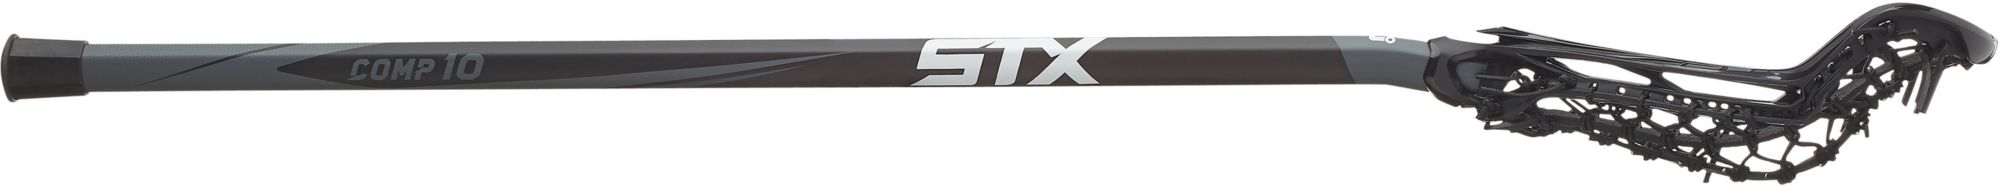 STX Women's Exult Pro on Comp 10 Complete Lacrosse Stick